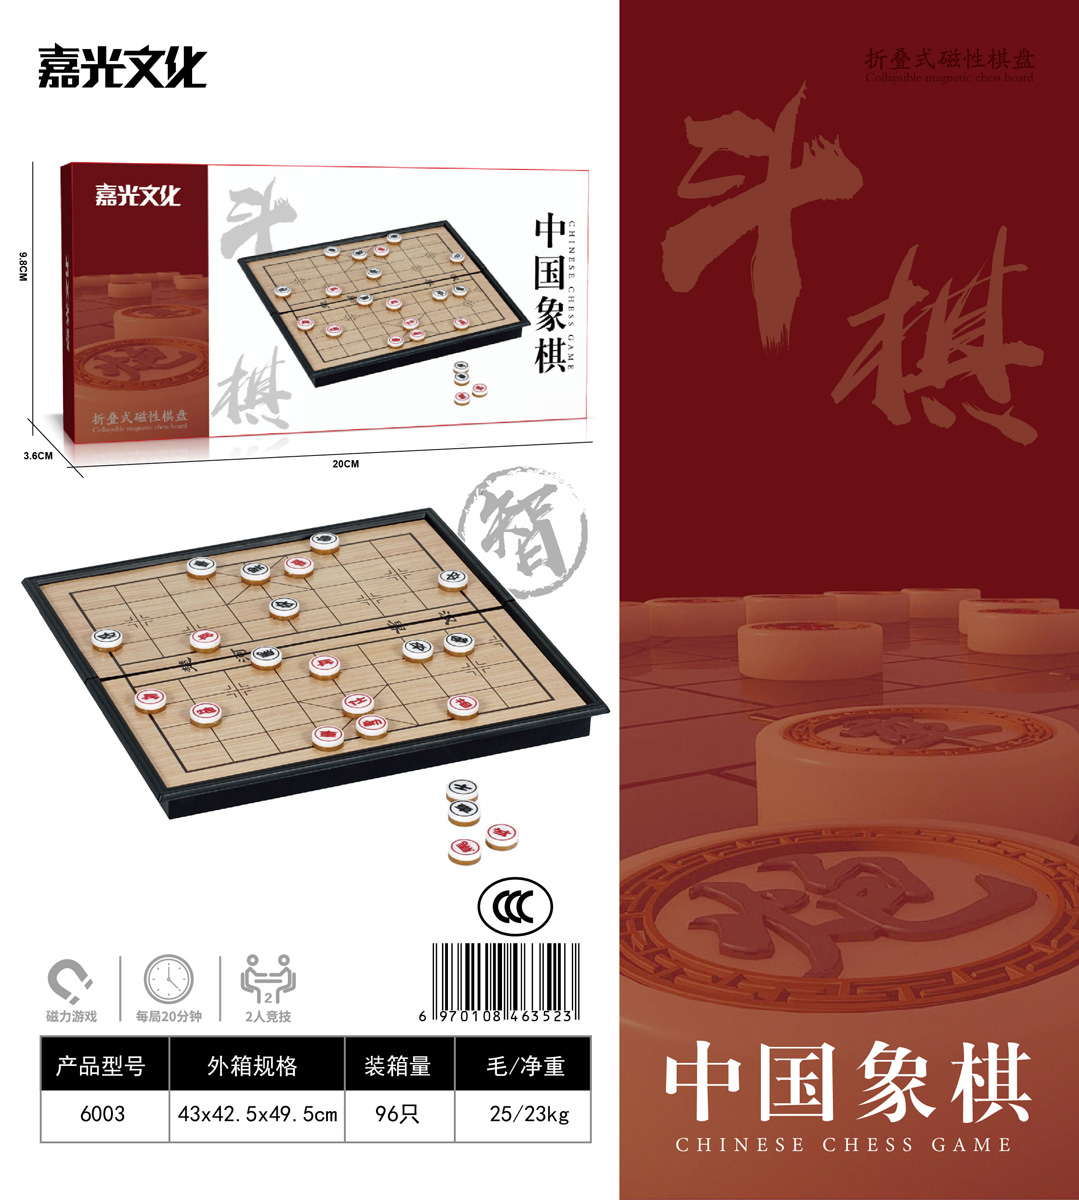 聚星玩具6003中国象棋桌游玩具